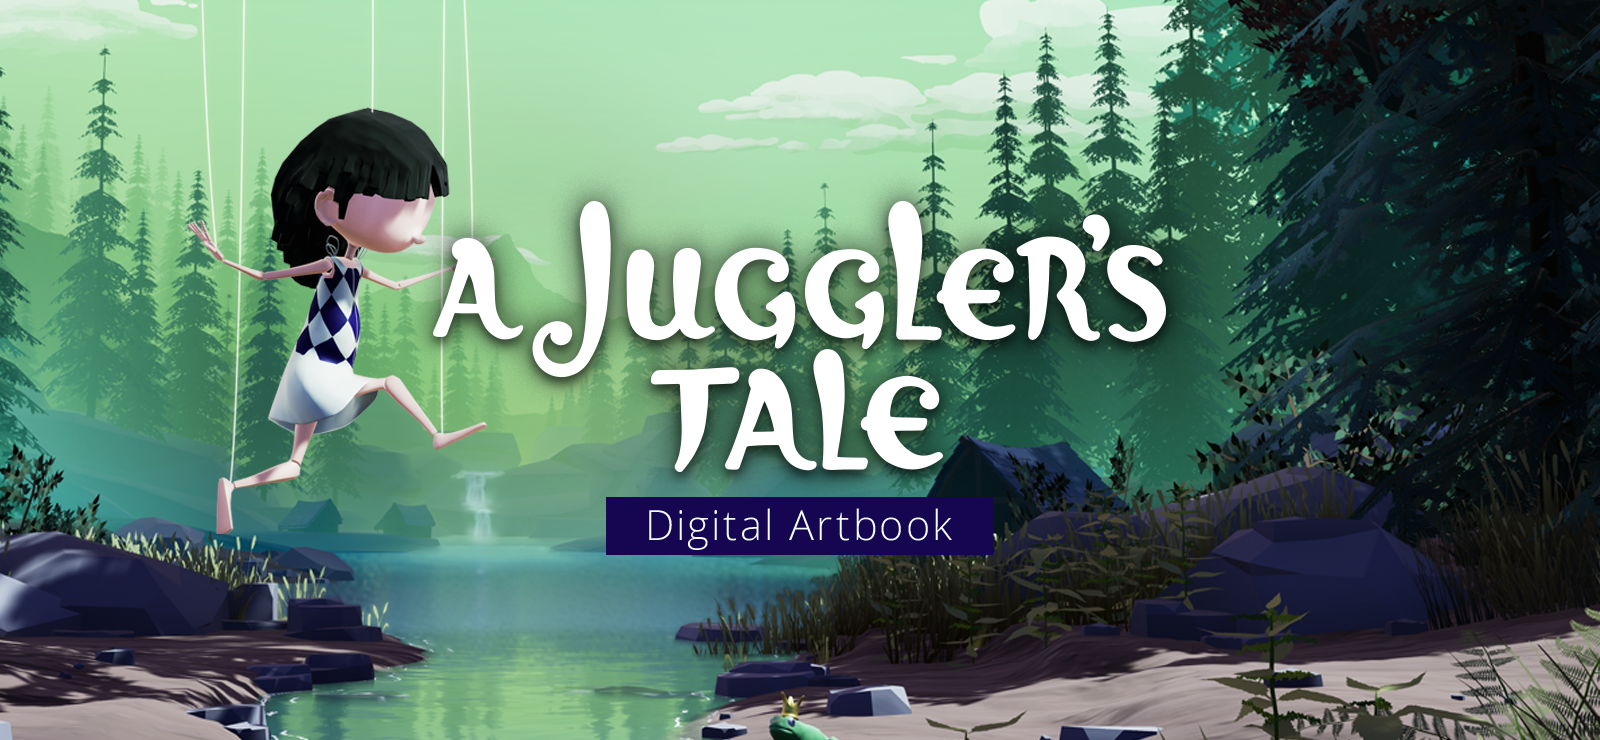 A Juggler's Tale Artbook